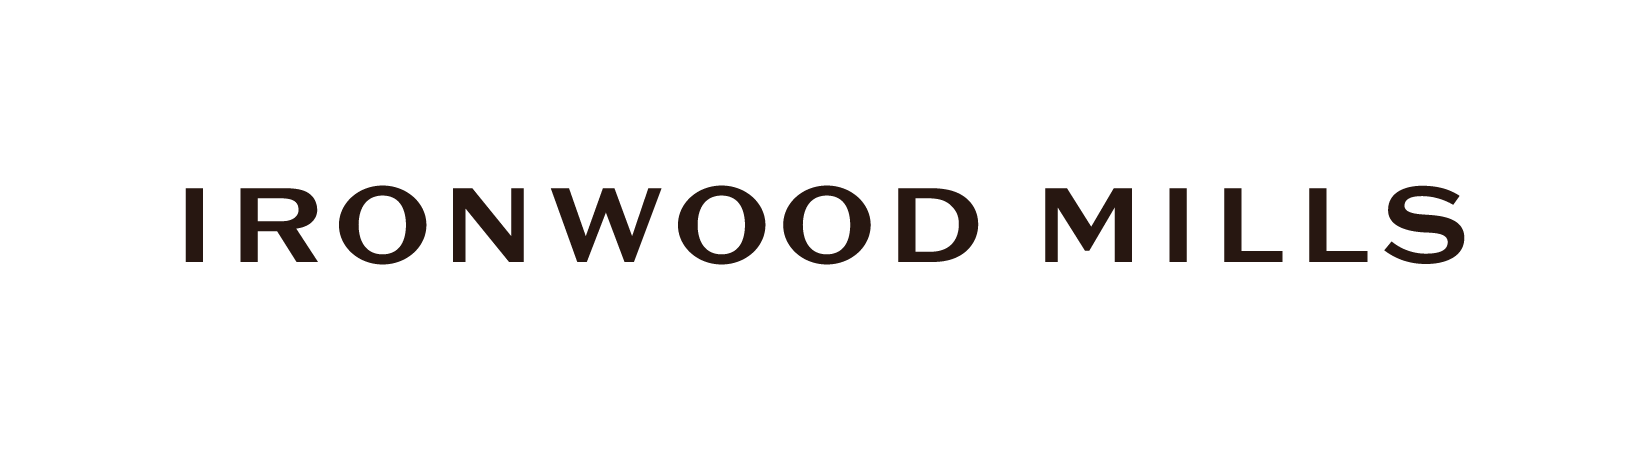 Ironwood Mills Horizontal Logo - Black